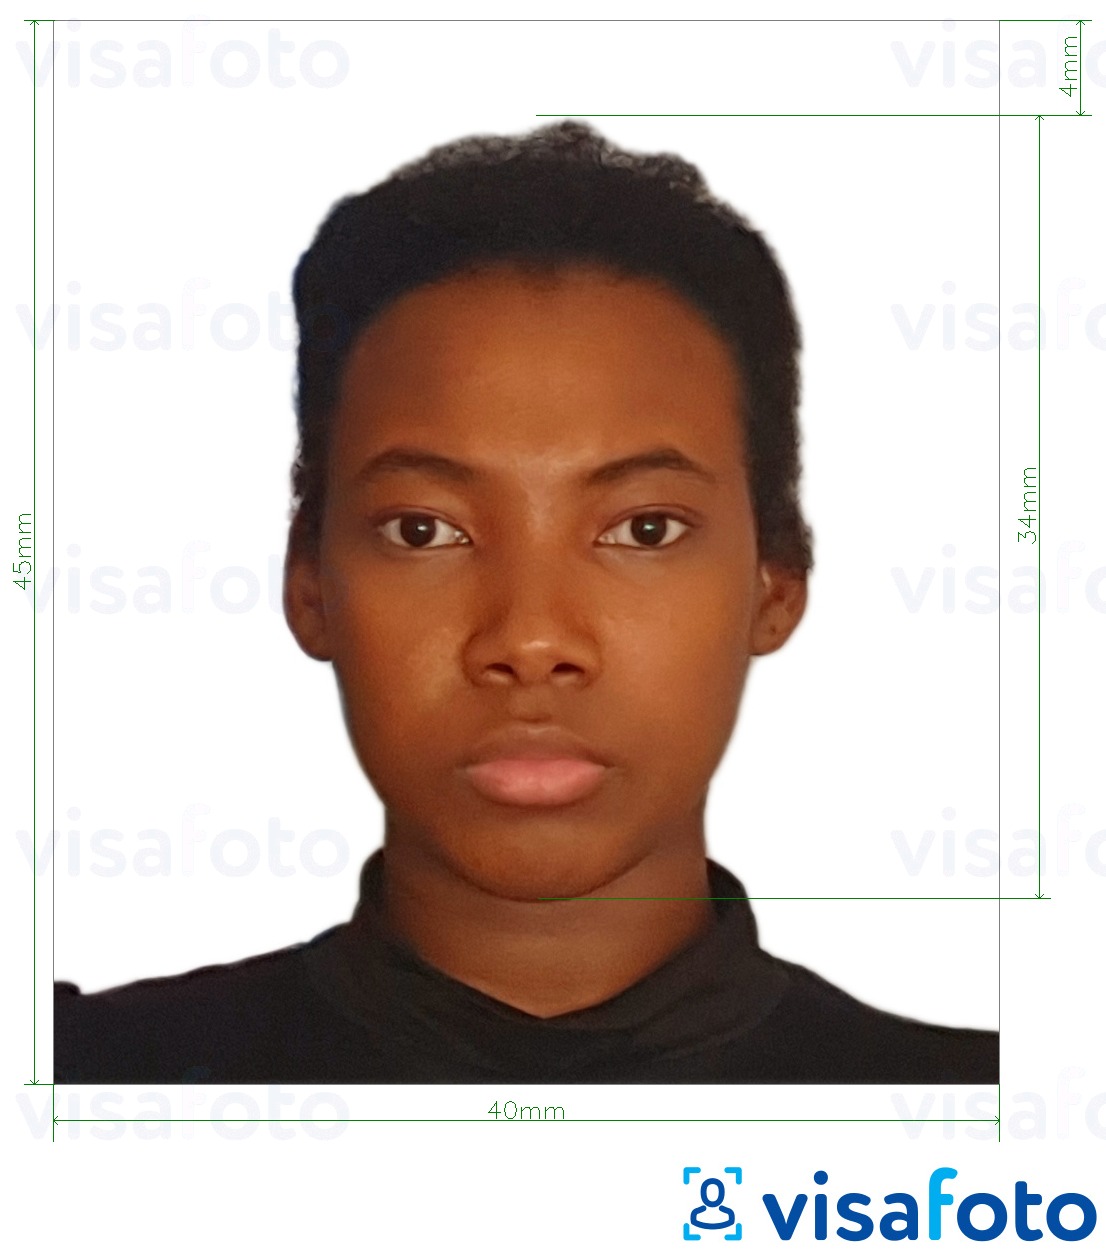 Exemples sur des photos pour Visa Tanzanie 40x45 mm (4x4,5 cm) avec les spécifications de taille exactes